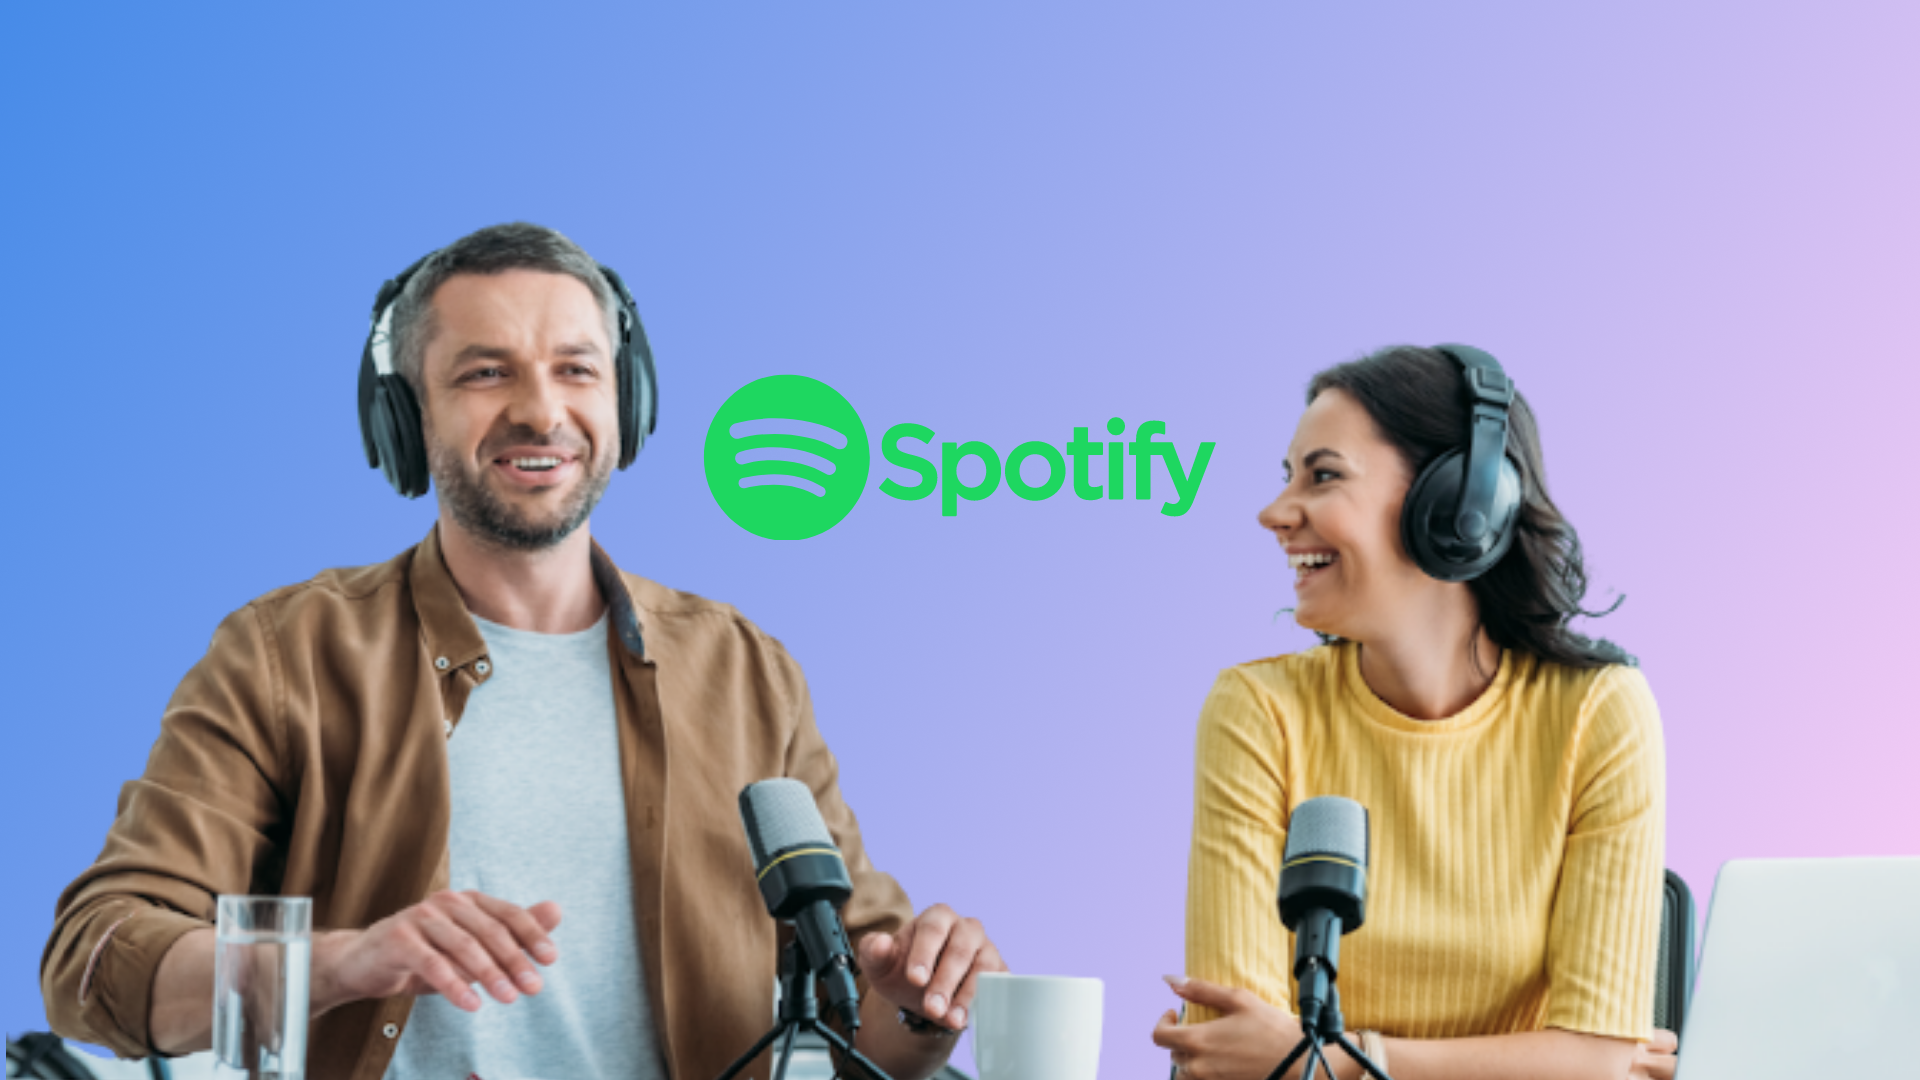 Melhor de Dois  Podcast on Spotify